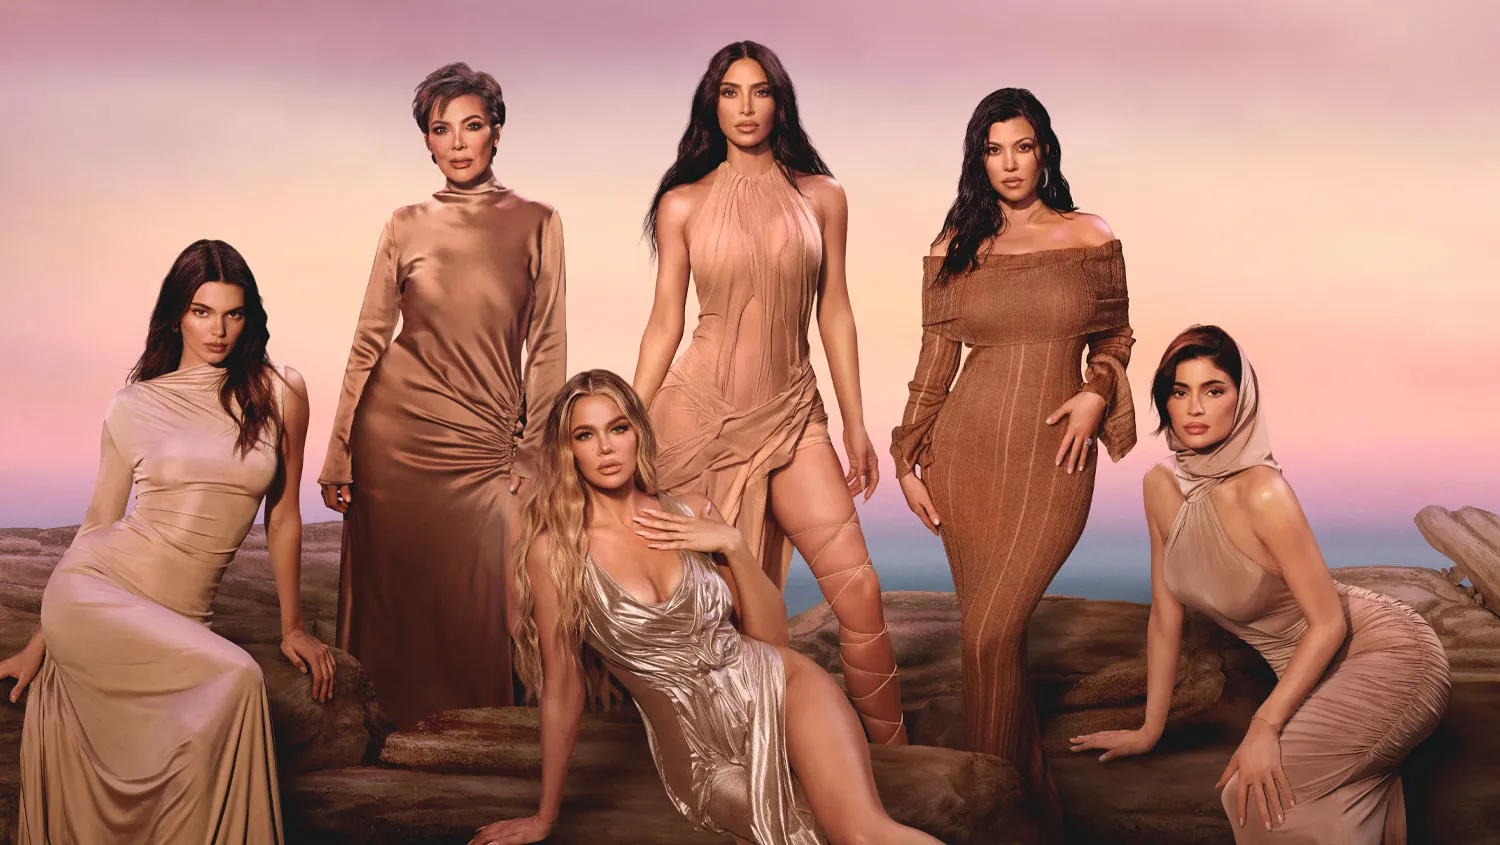 Elenco principal de "Las Kardashians" posando en un entorno al aire libre con un cielo al atardecer de fondo. De izquierda a derecha: Kendall Jenner, Kris Jenner, Khloé Kardashian, Kim Kardashian, Kourtney Kardashian y Kylie Jenner.